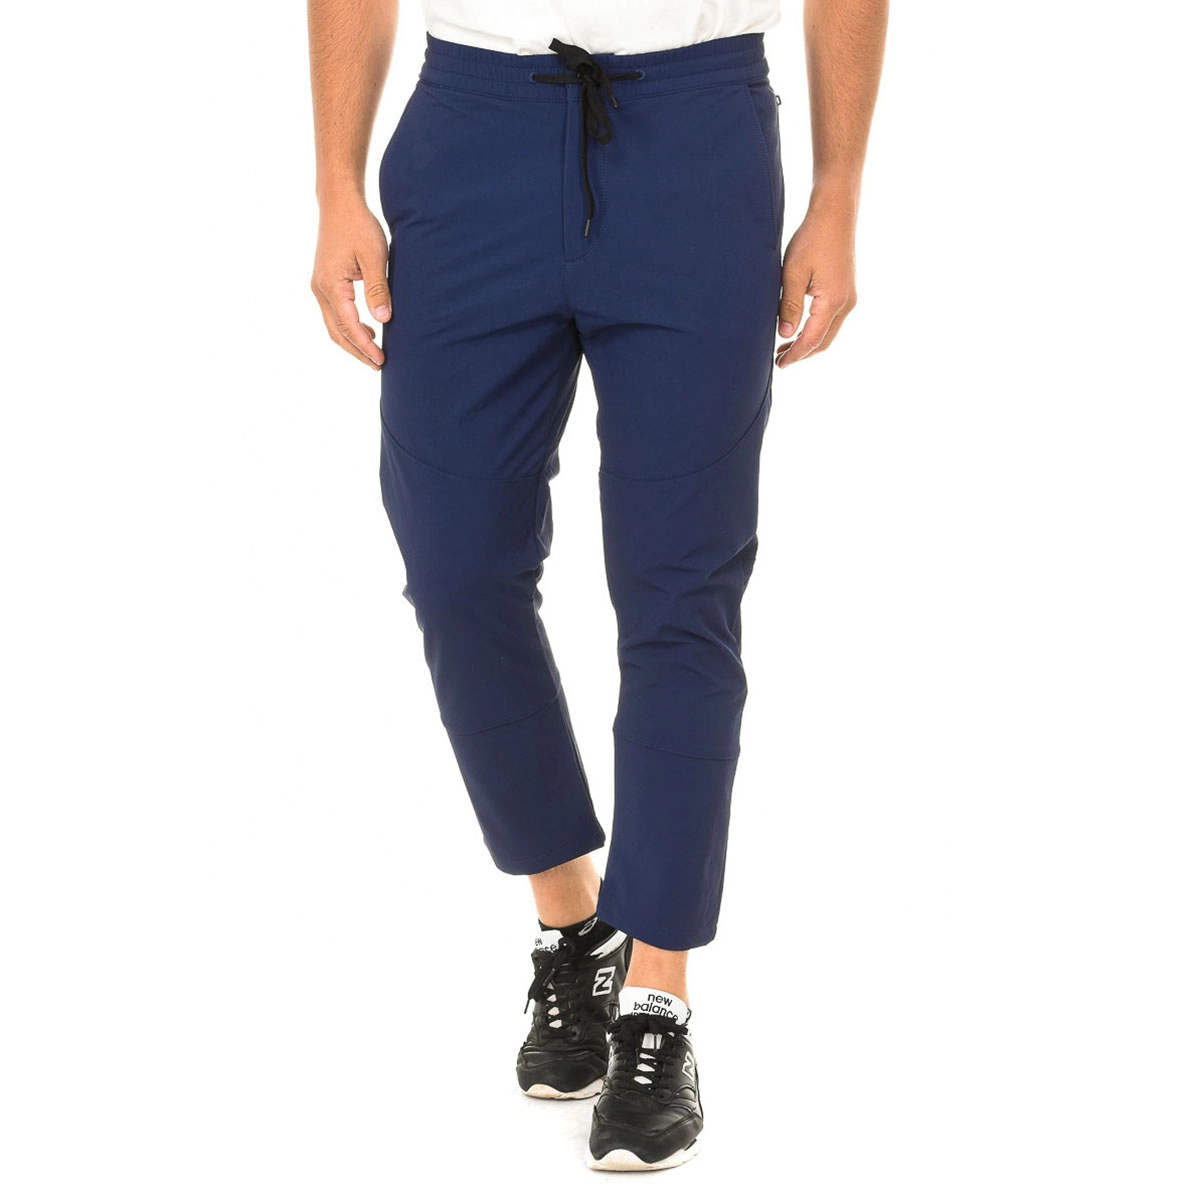 Pantalón largo estilo chándal con cordón ajustable Napapijri NP0A4E8A hombre  Talla: S Color: Azul NP0A4E8A-BB6.S